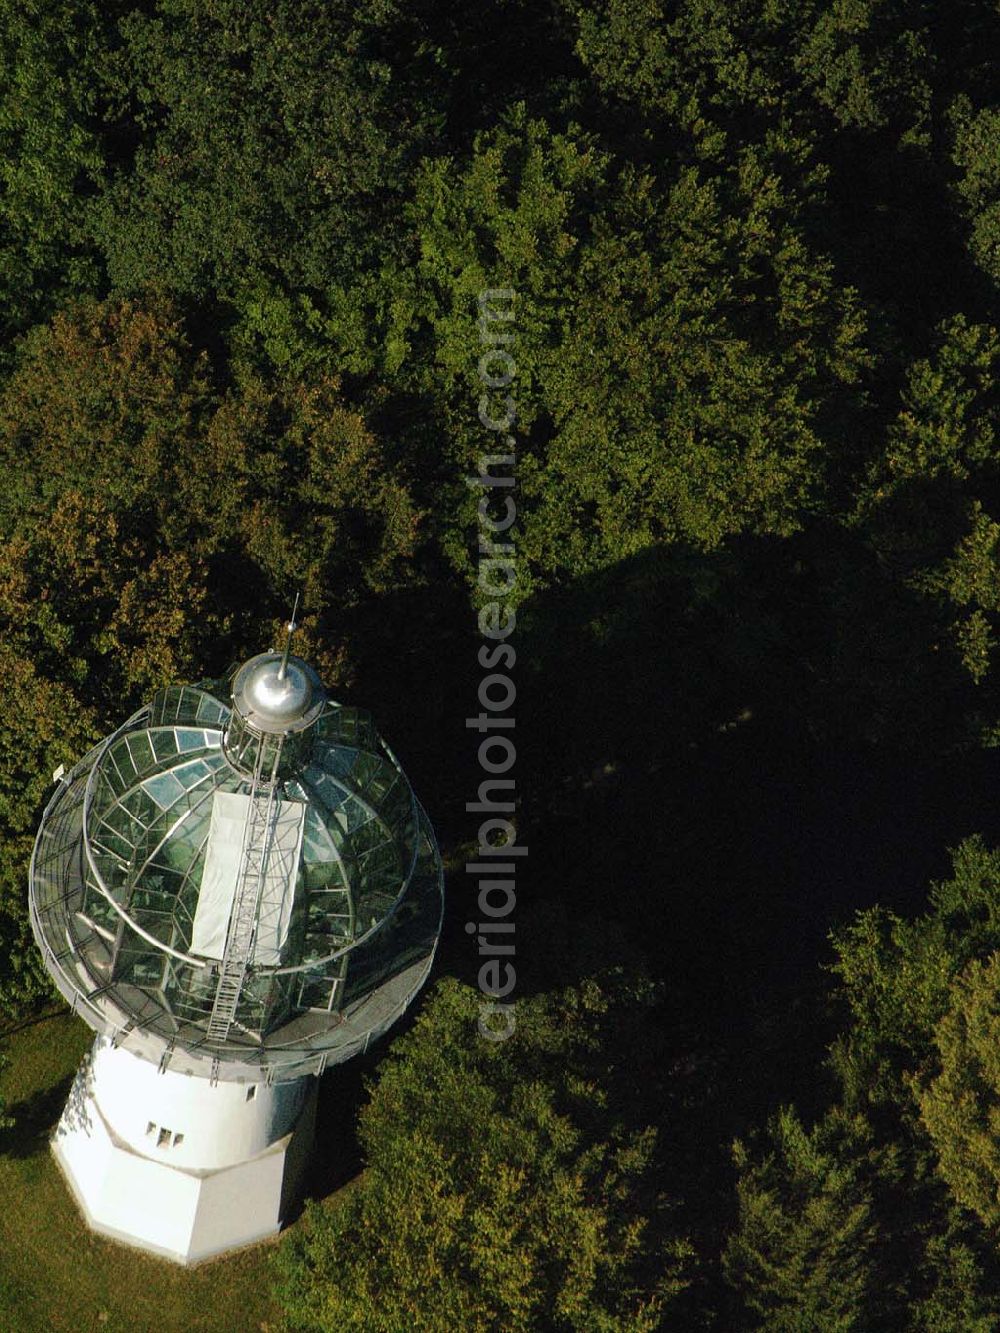 Aerial image Wuppertal - 29.08.2005 Wuppertal, Ein umgebauter Wasserturm westlich von Wuppertal.